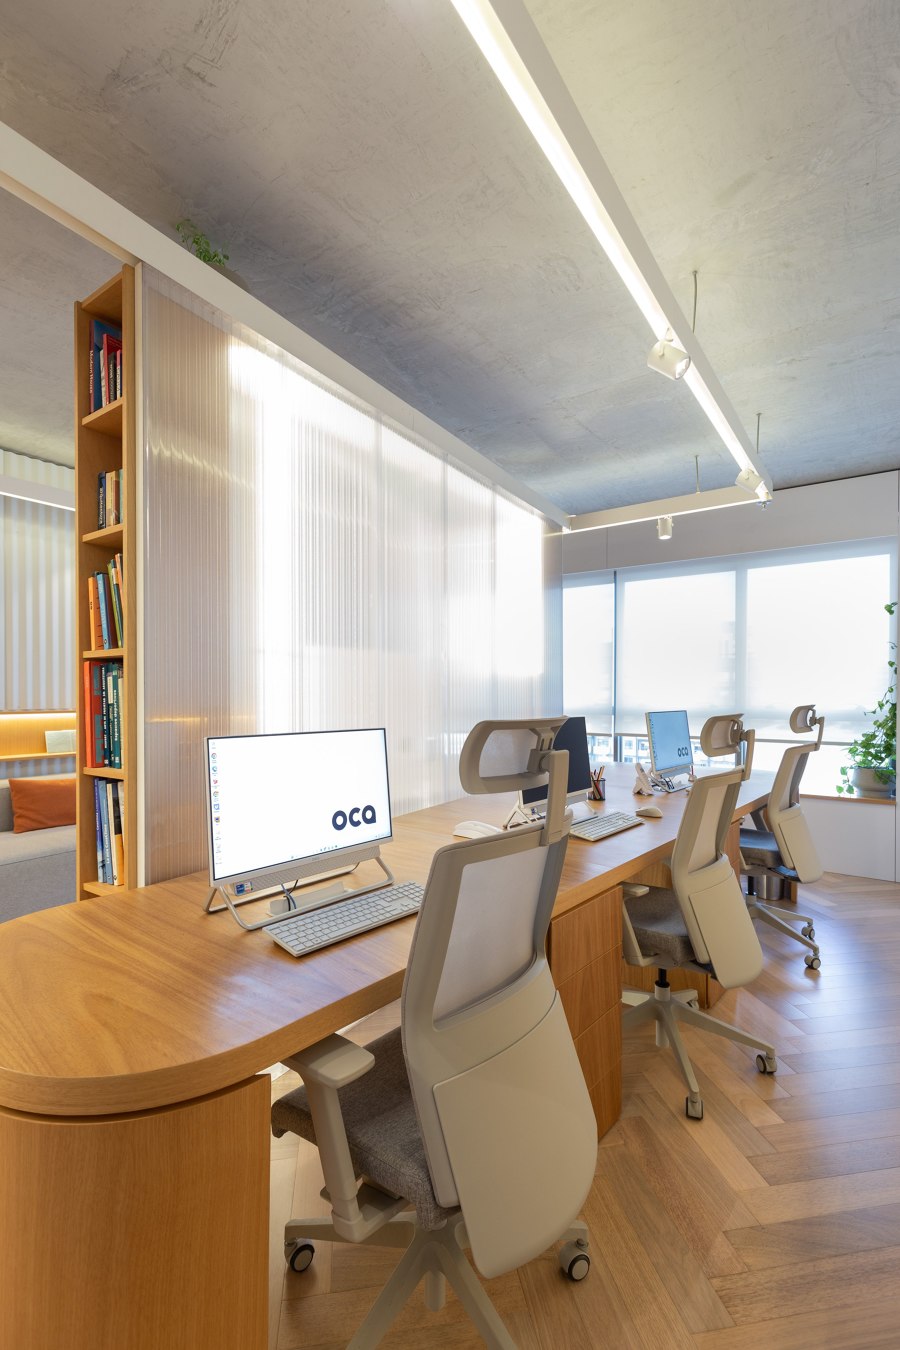 OCA Office Headquarters 03 de Oficina Conceito Arquitetura | Oficinas